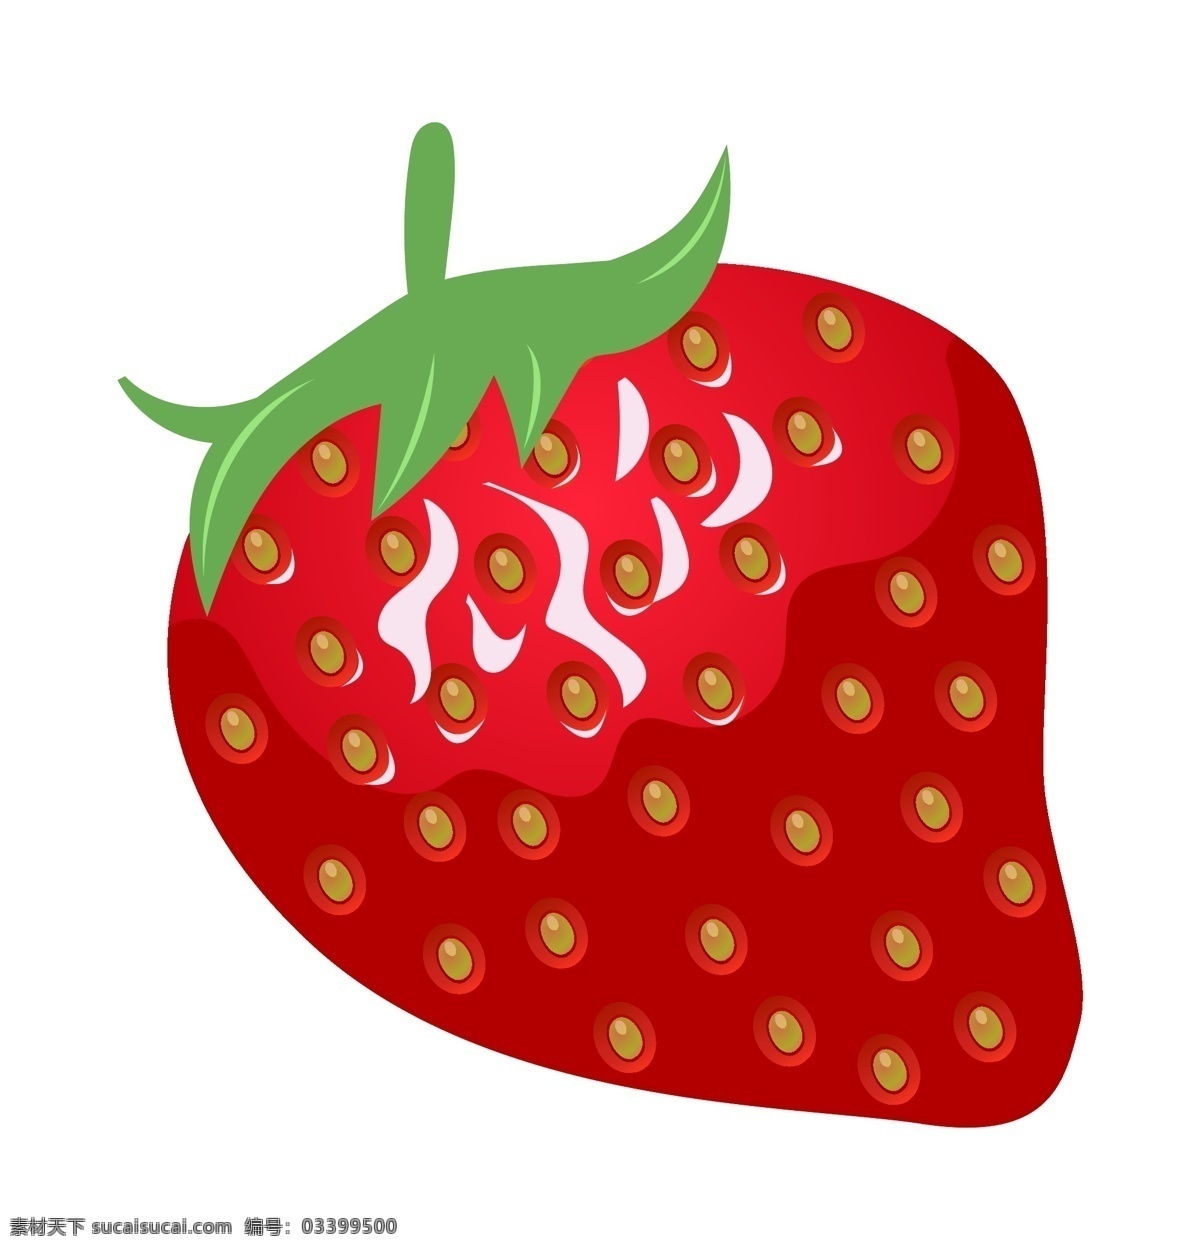 美味 红色 草莓 插画 红色的草莓 诱人的草莓 绿色 叶子 好吃的草莓 新鲜水果 仿真草莓